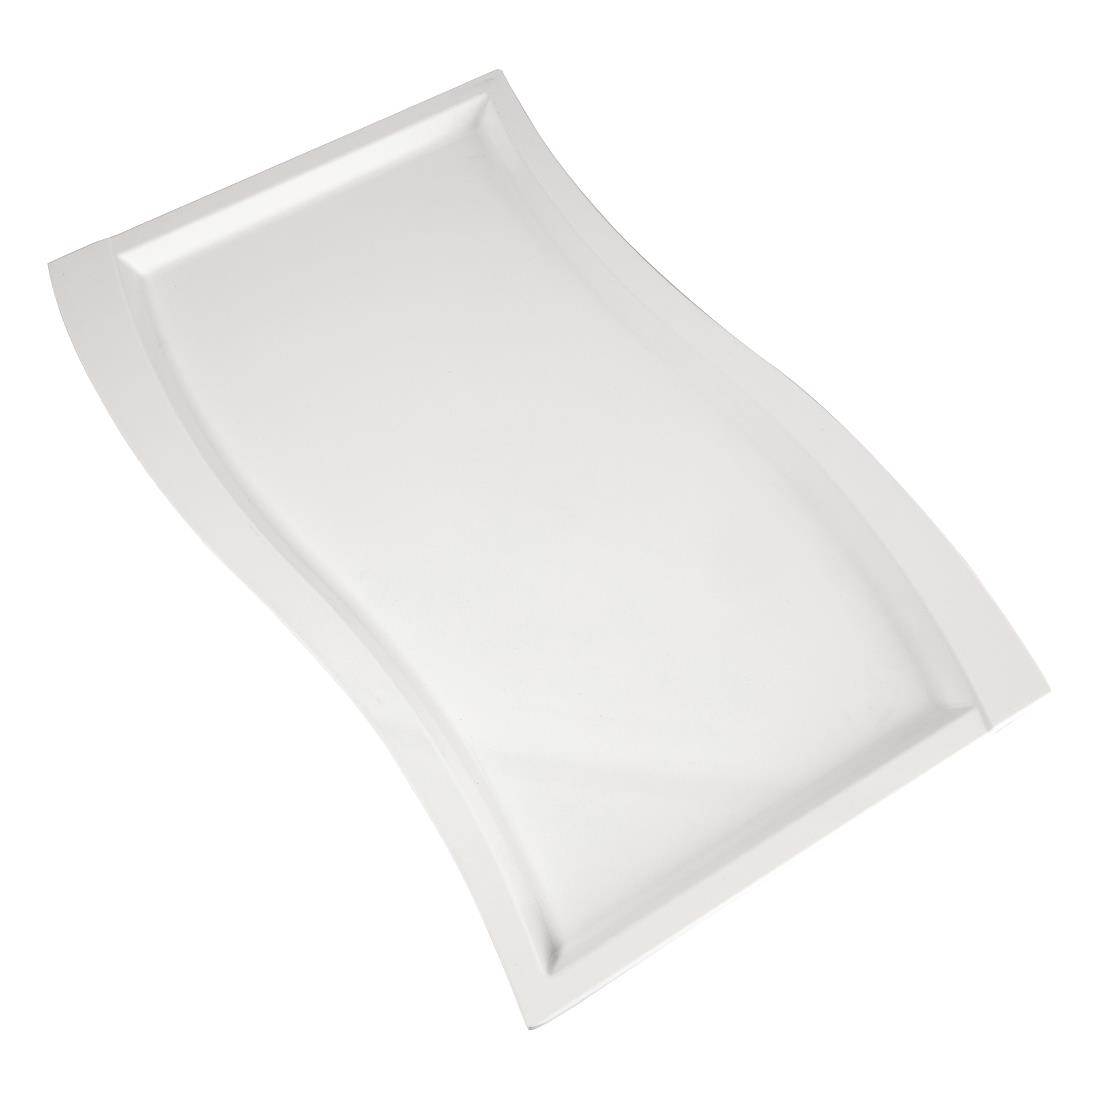 APS Wave Melamine Platter White GN 1/1